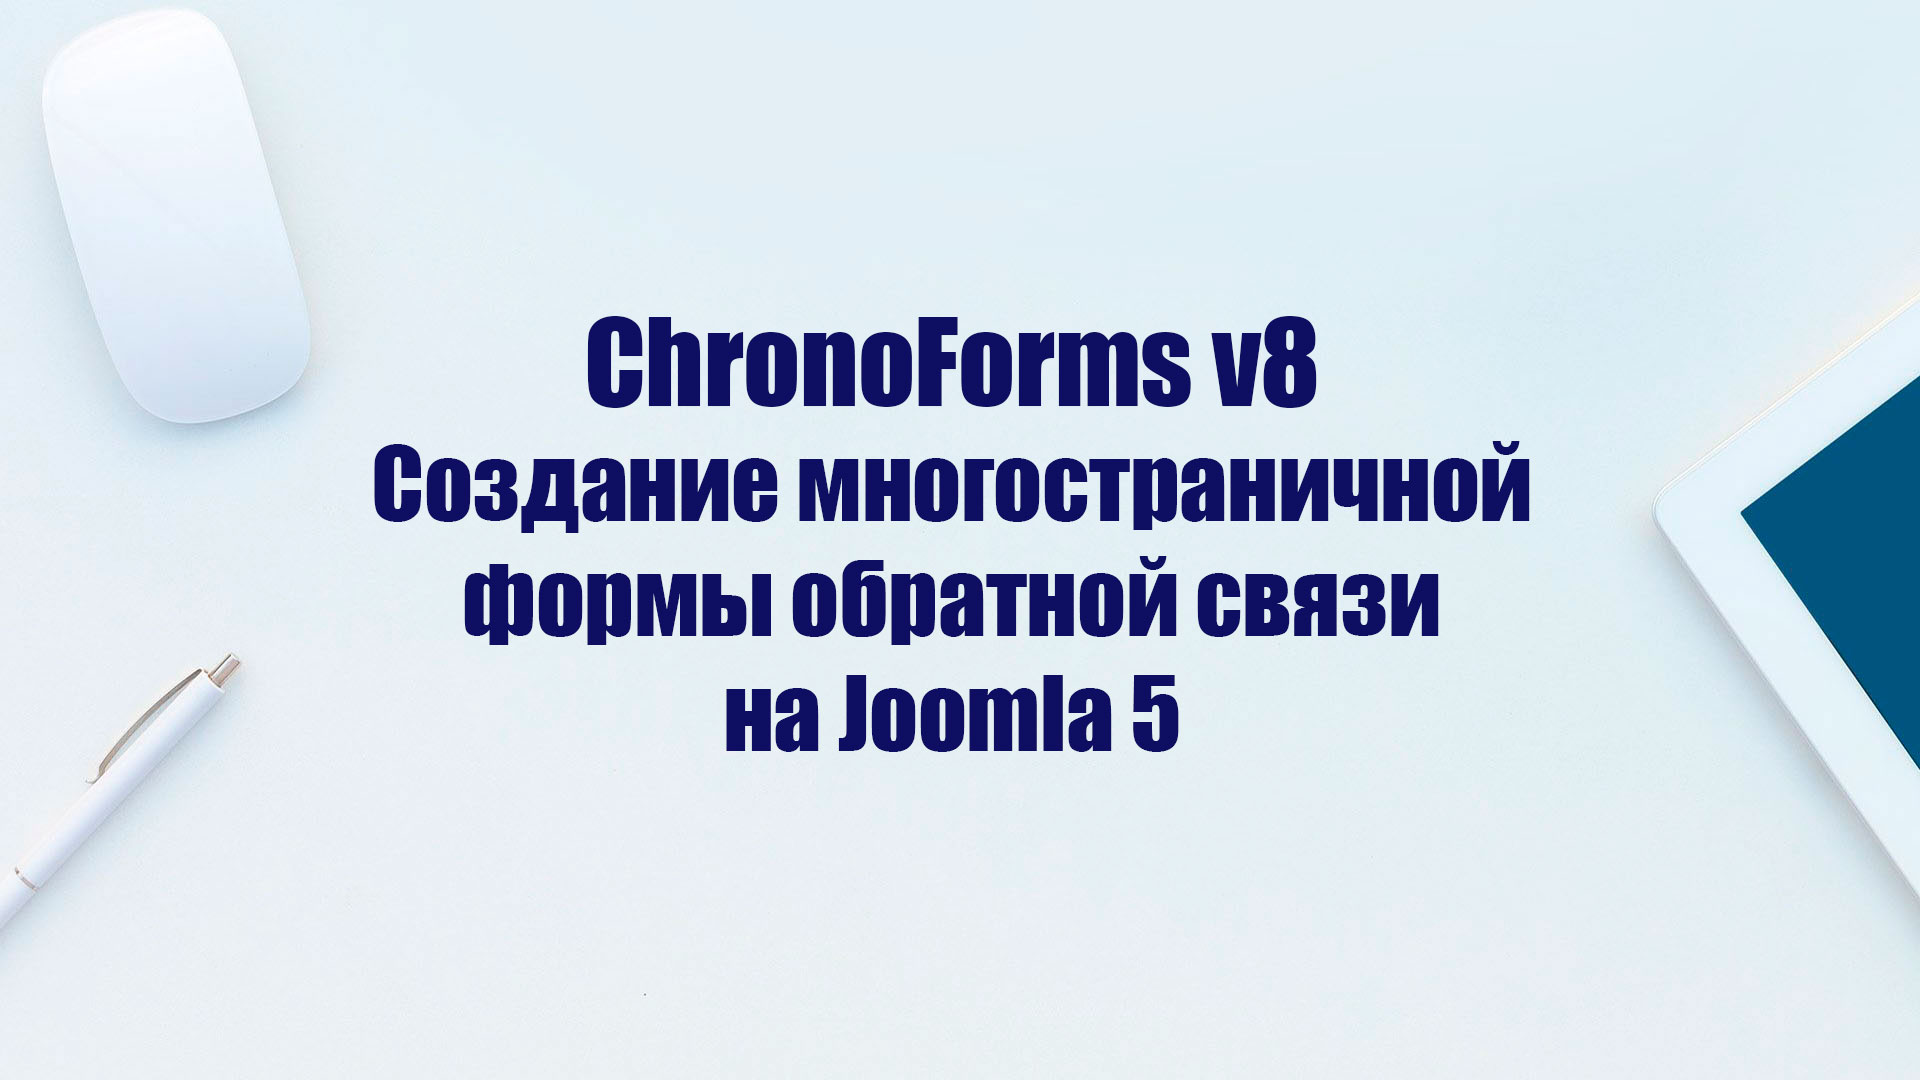 ChronoForms 8 – как создать многостраничную форму обратной связи на Joomla 5